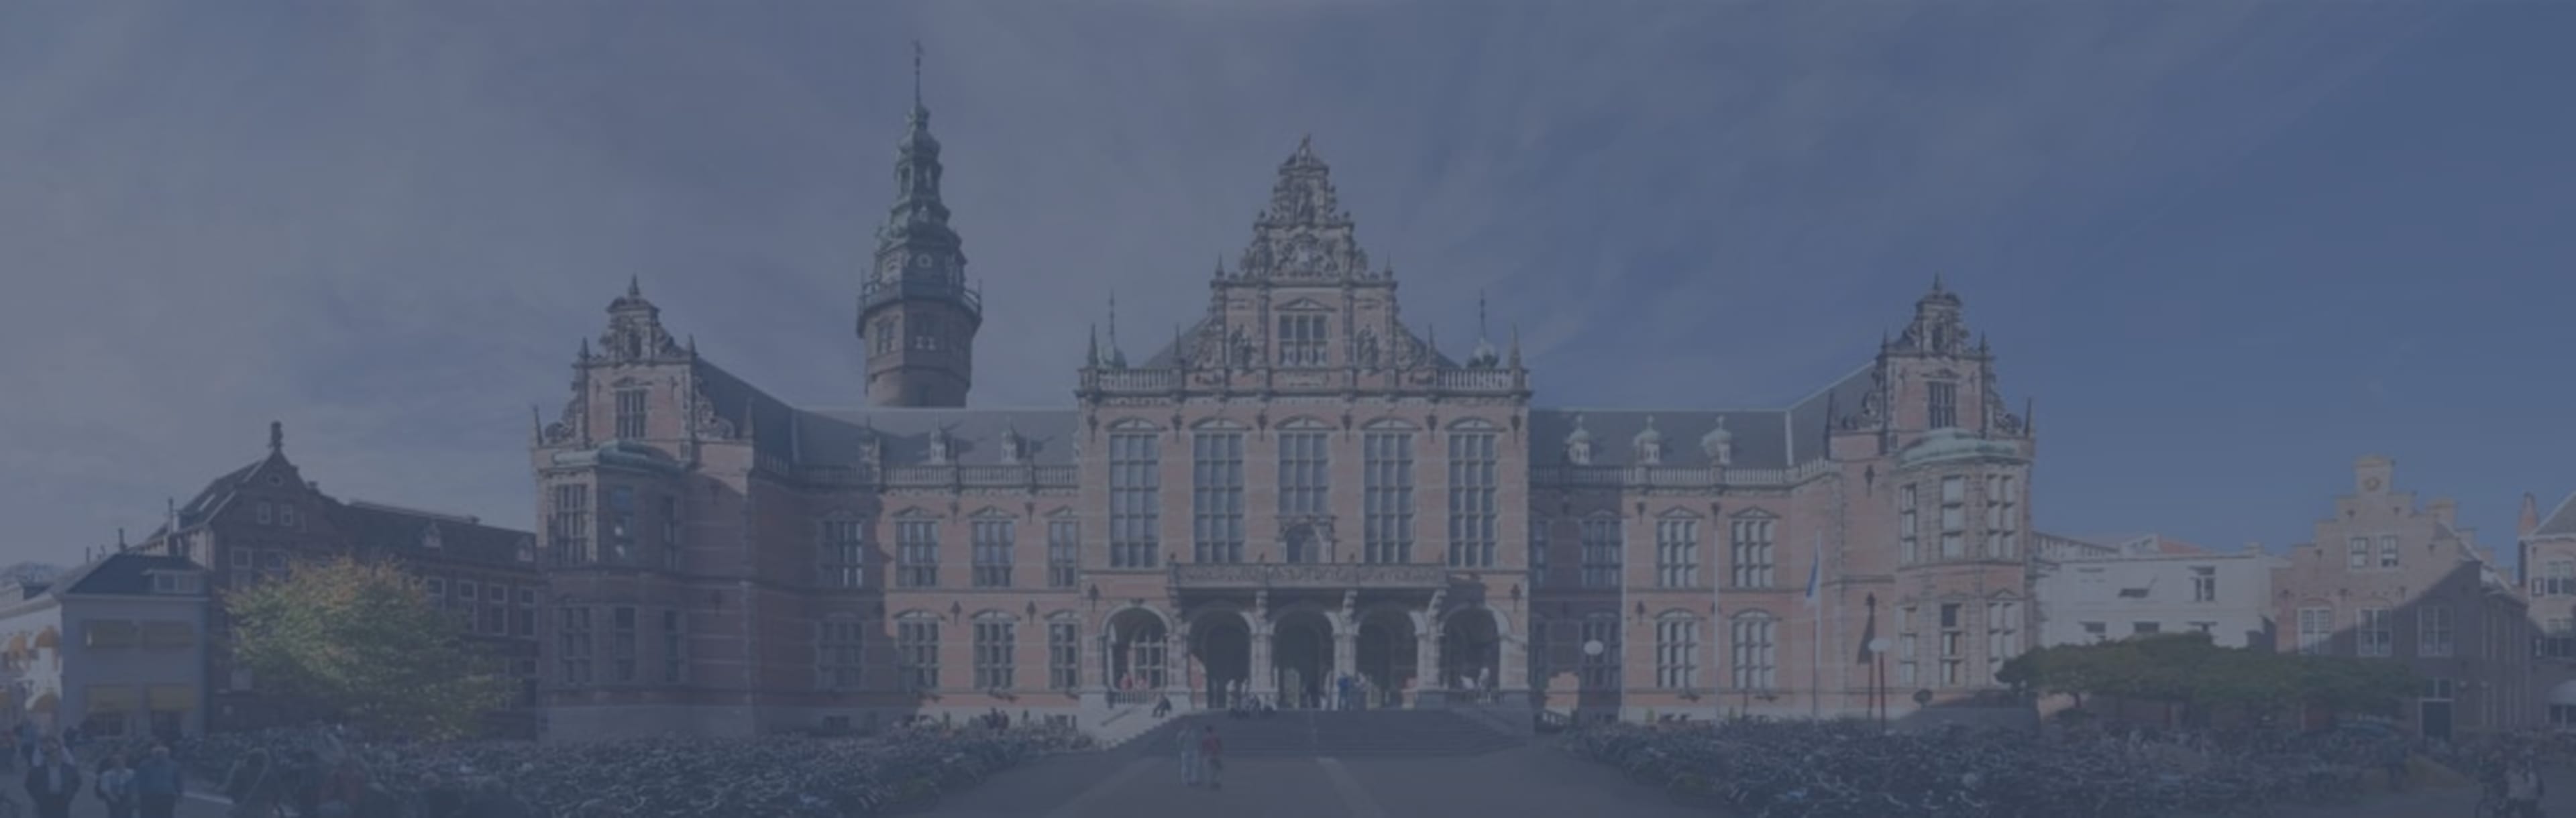 University of Groningen LLM Derecho Tecnológico e Innovación